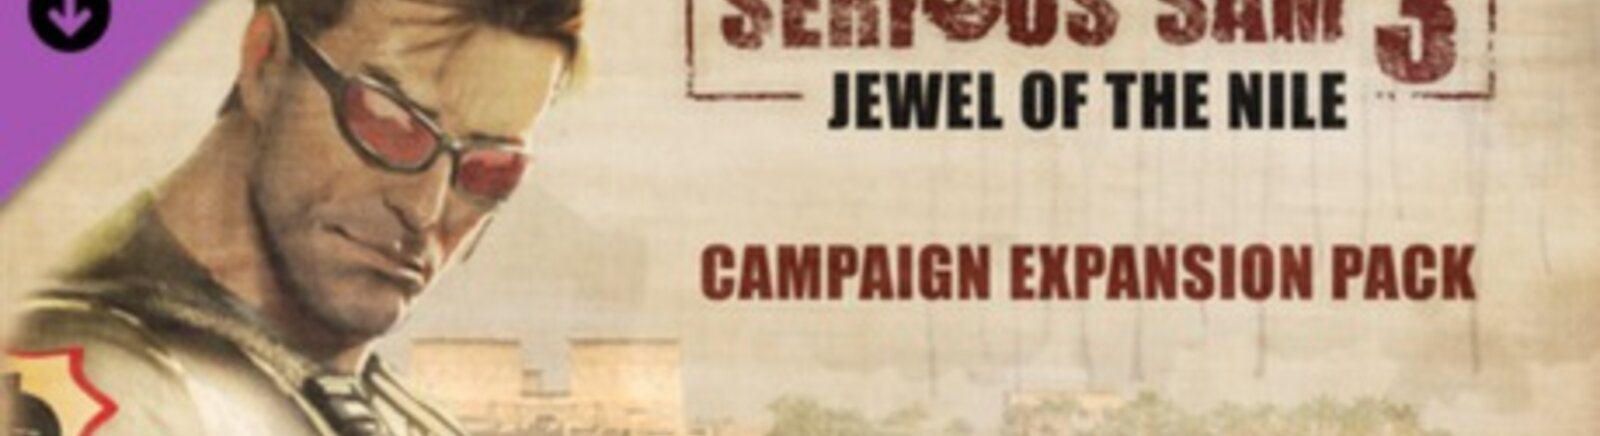 Дата выхода Serious Sam 3: Jewel of the Nile  на PC и Xbox 360 в России и во всем мире